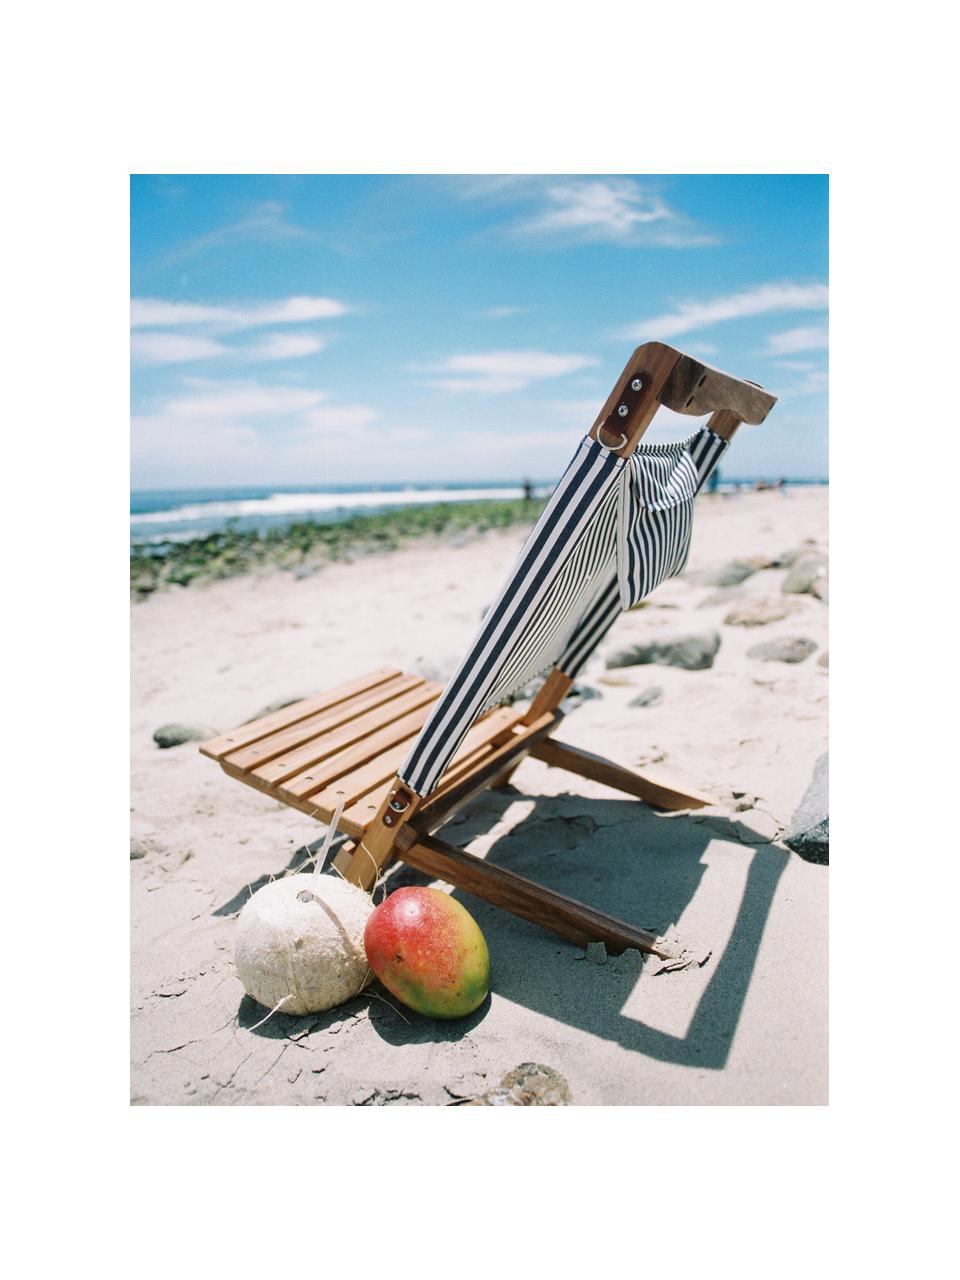 Inklapbare ligstoel Lauren's, Frame: hout, Marineblauw, wit, bruin, B 41 x H 58 cm